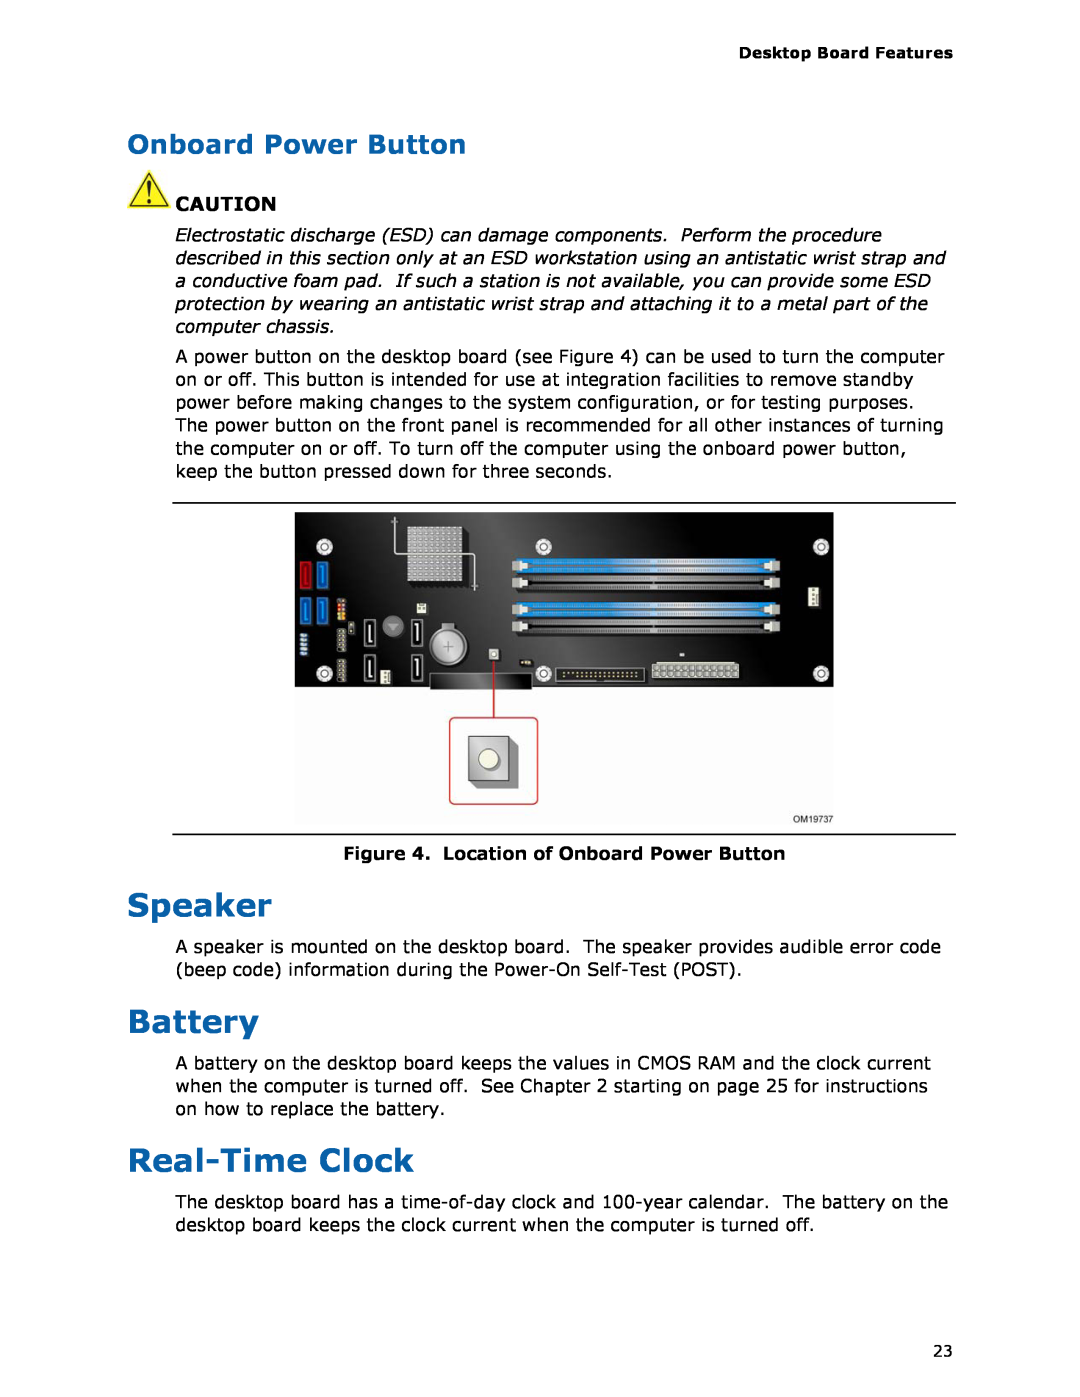 Intel D975XBX2 manual Speaker, Battery, Real-TimeClock, Onboard Power Button 